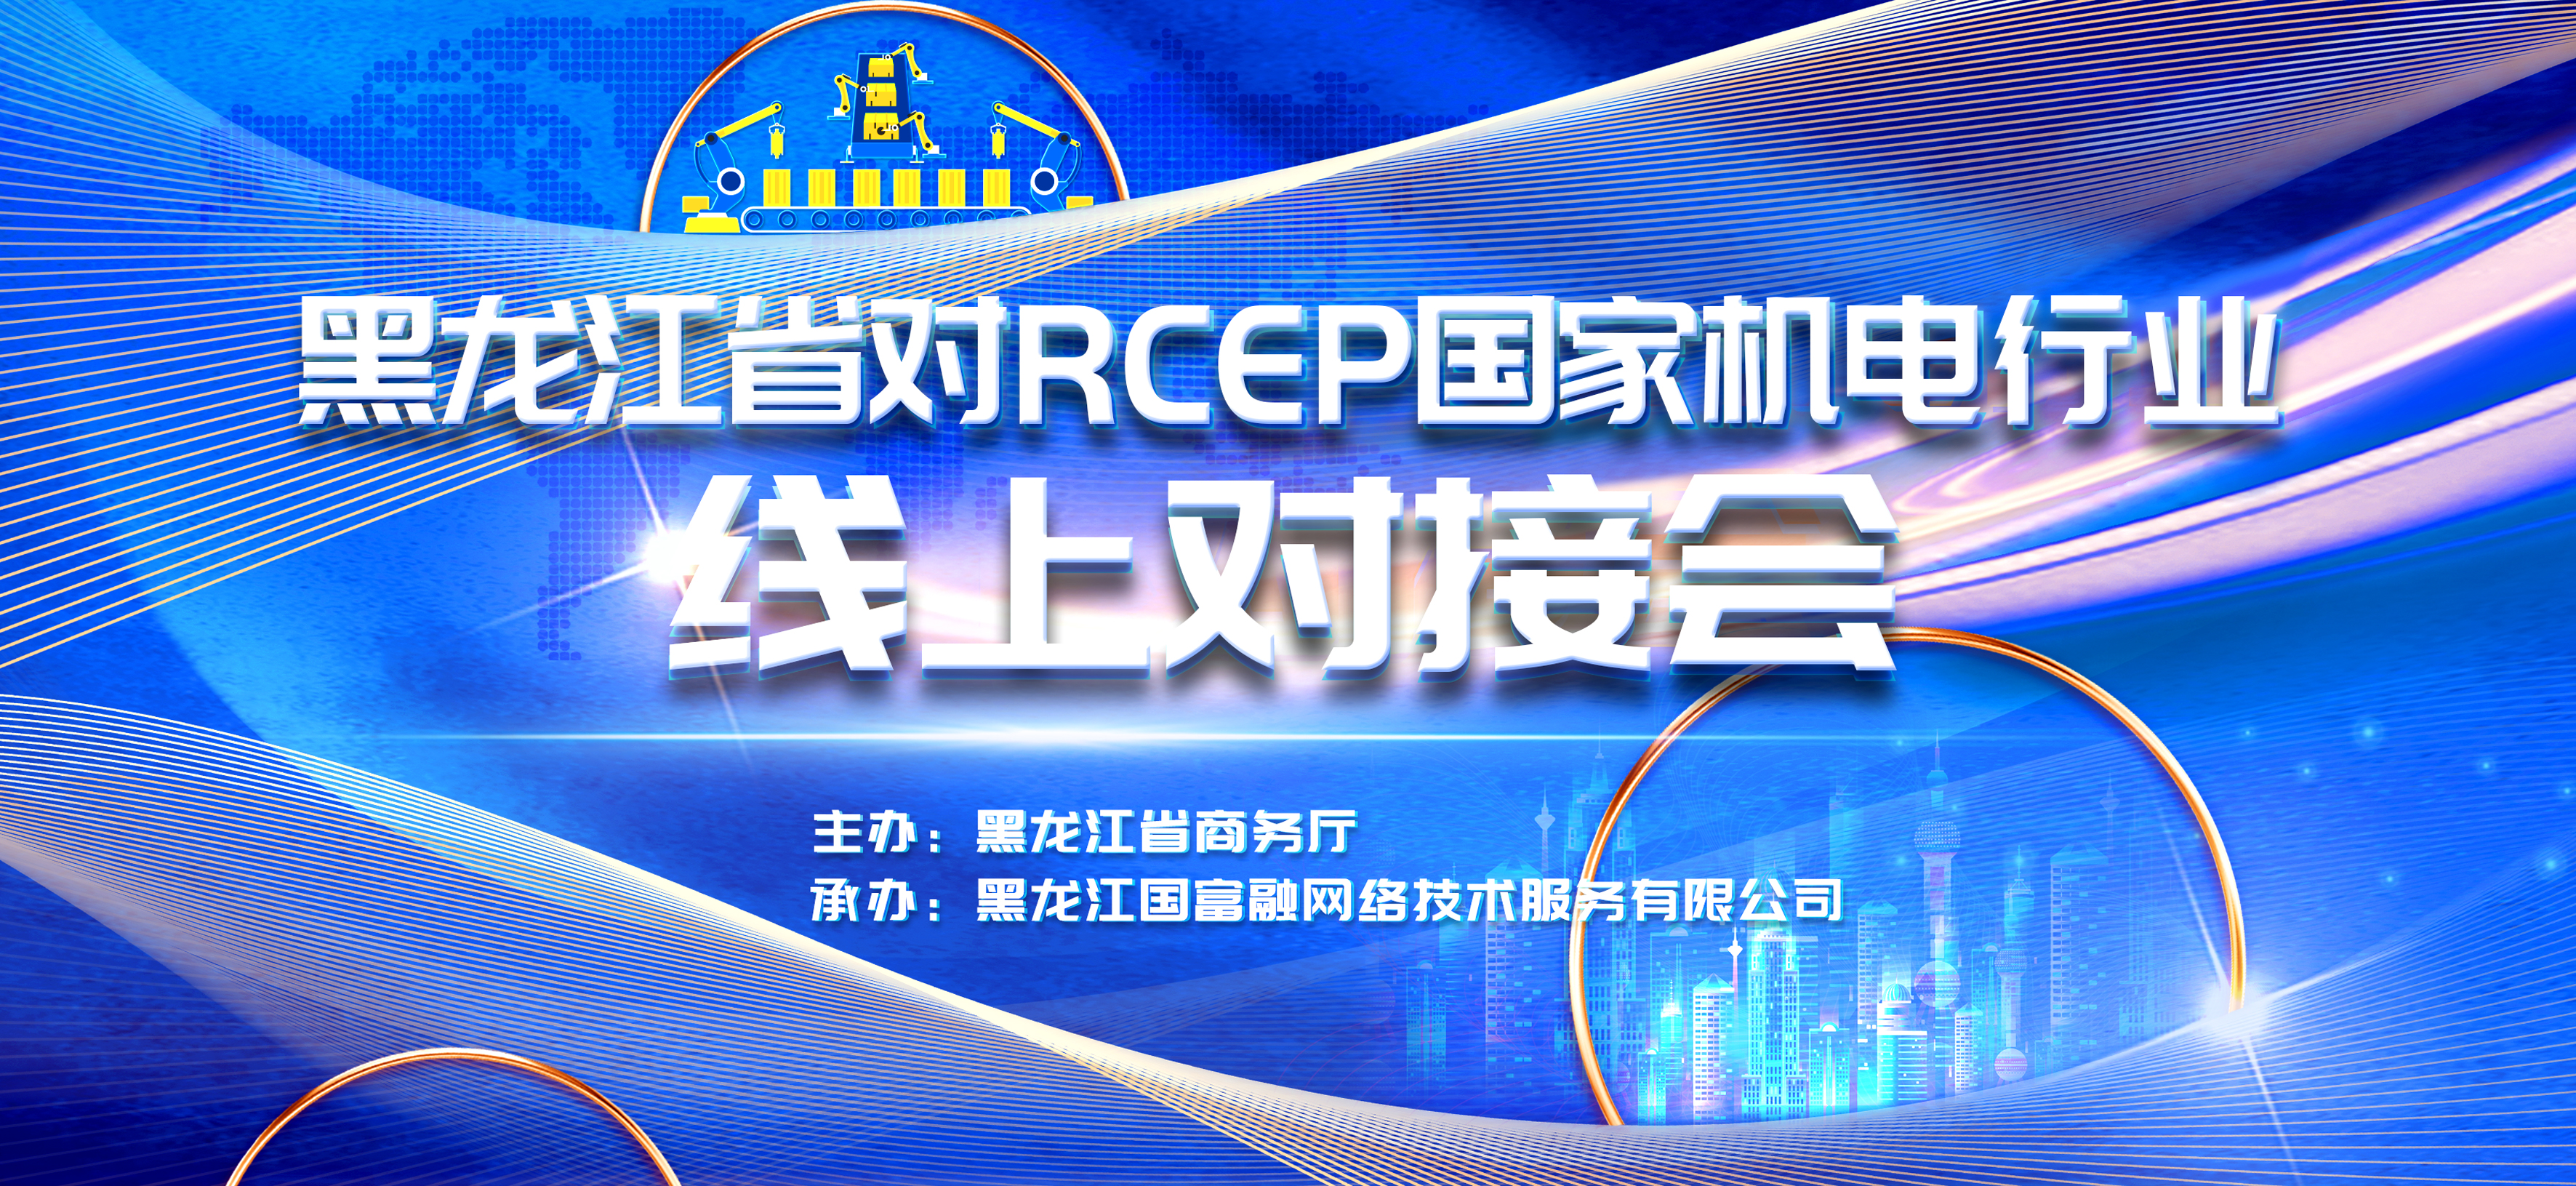 黑龙江省对RCEP国家机电行业线上对接会